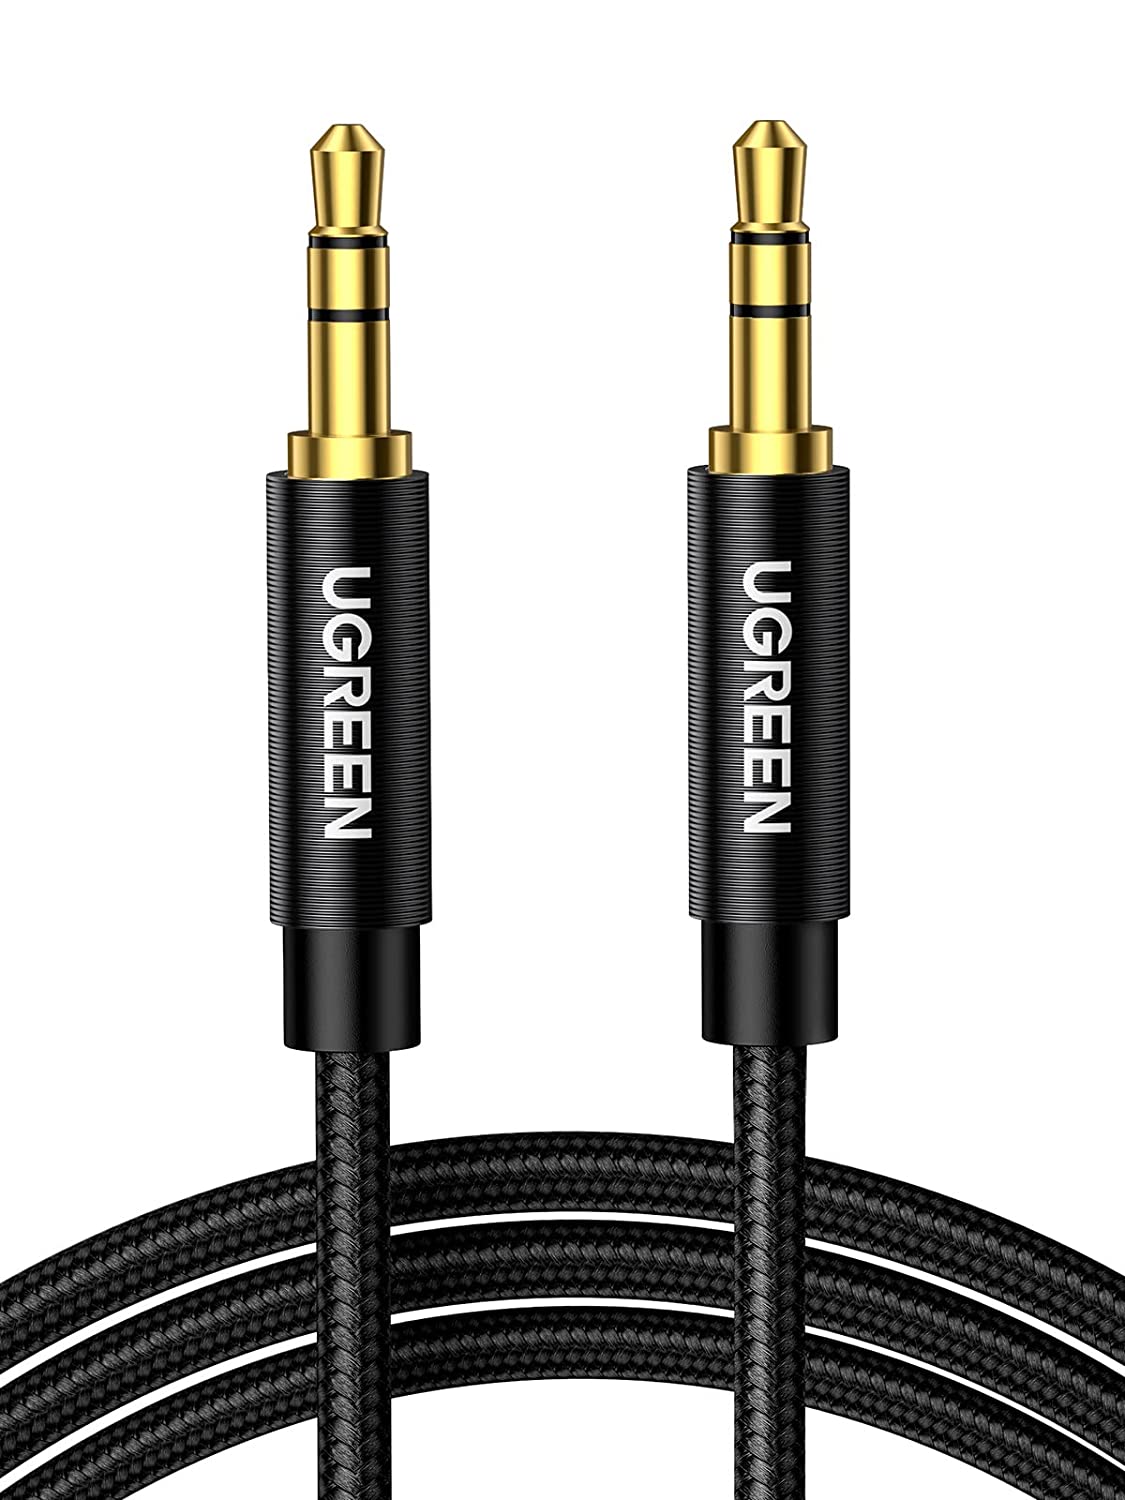 50361 Аудио кабель 3,5мм - 3,5мм UGREEN AV112, цвет: черный, длина: 1m